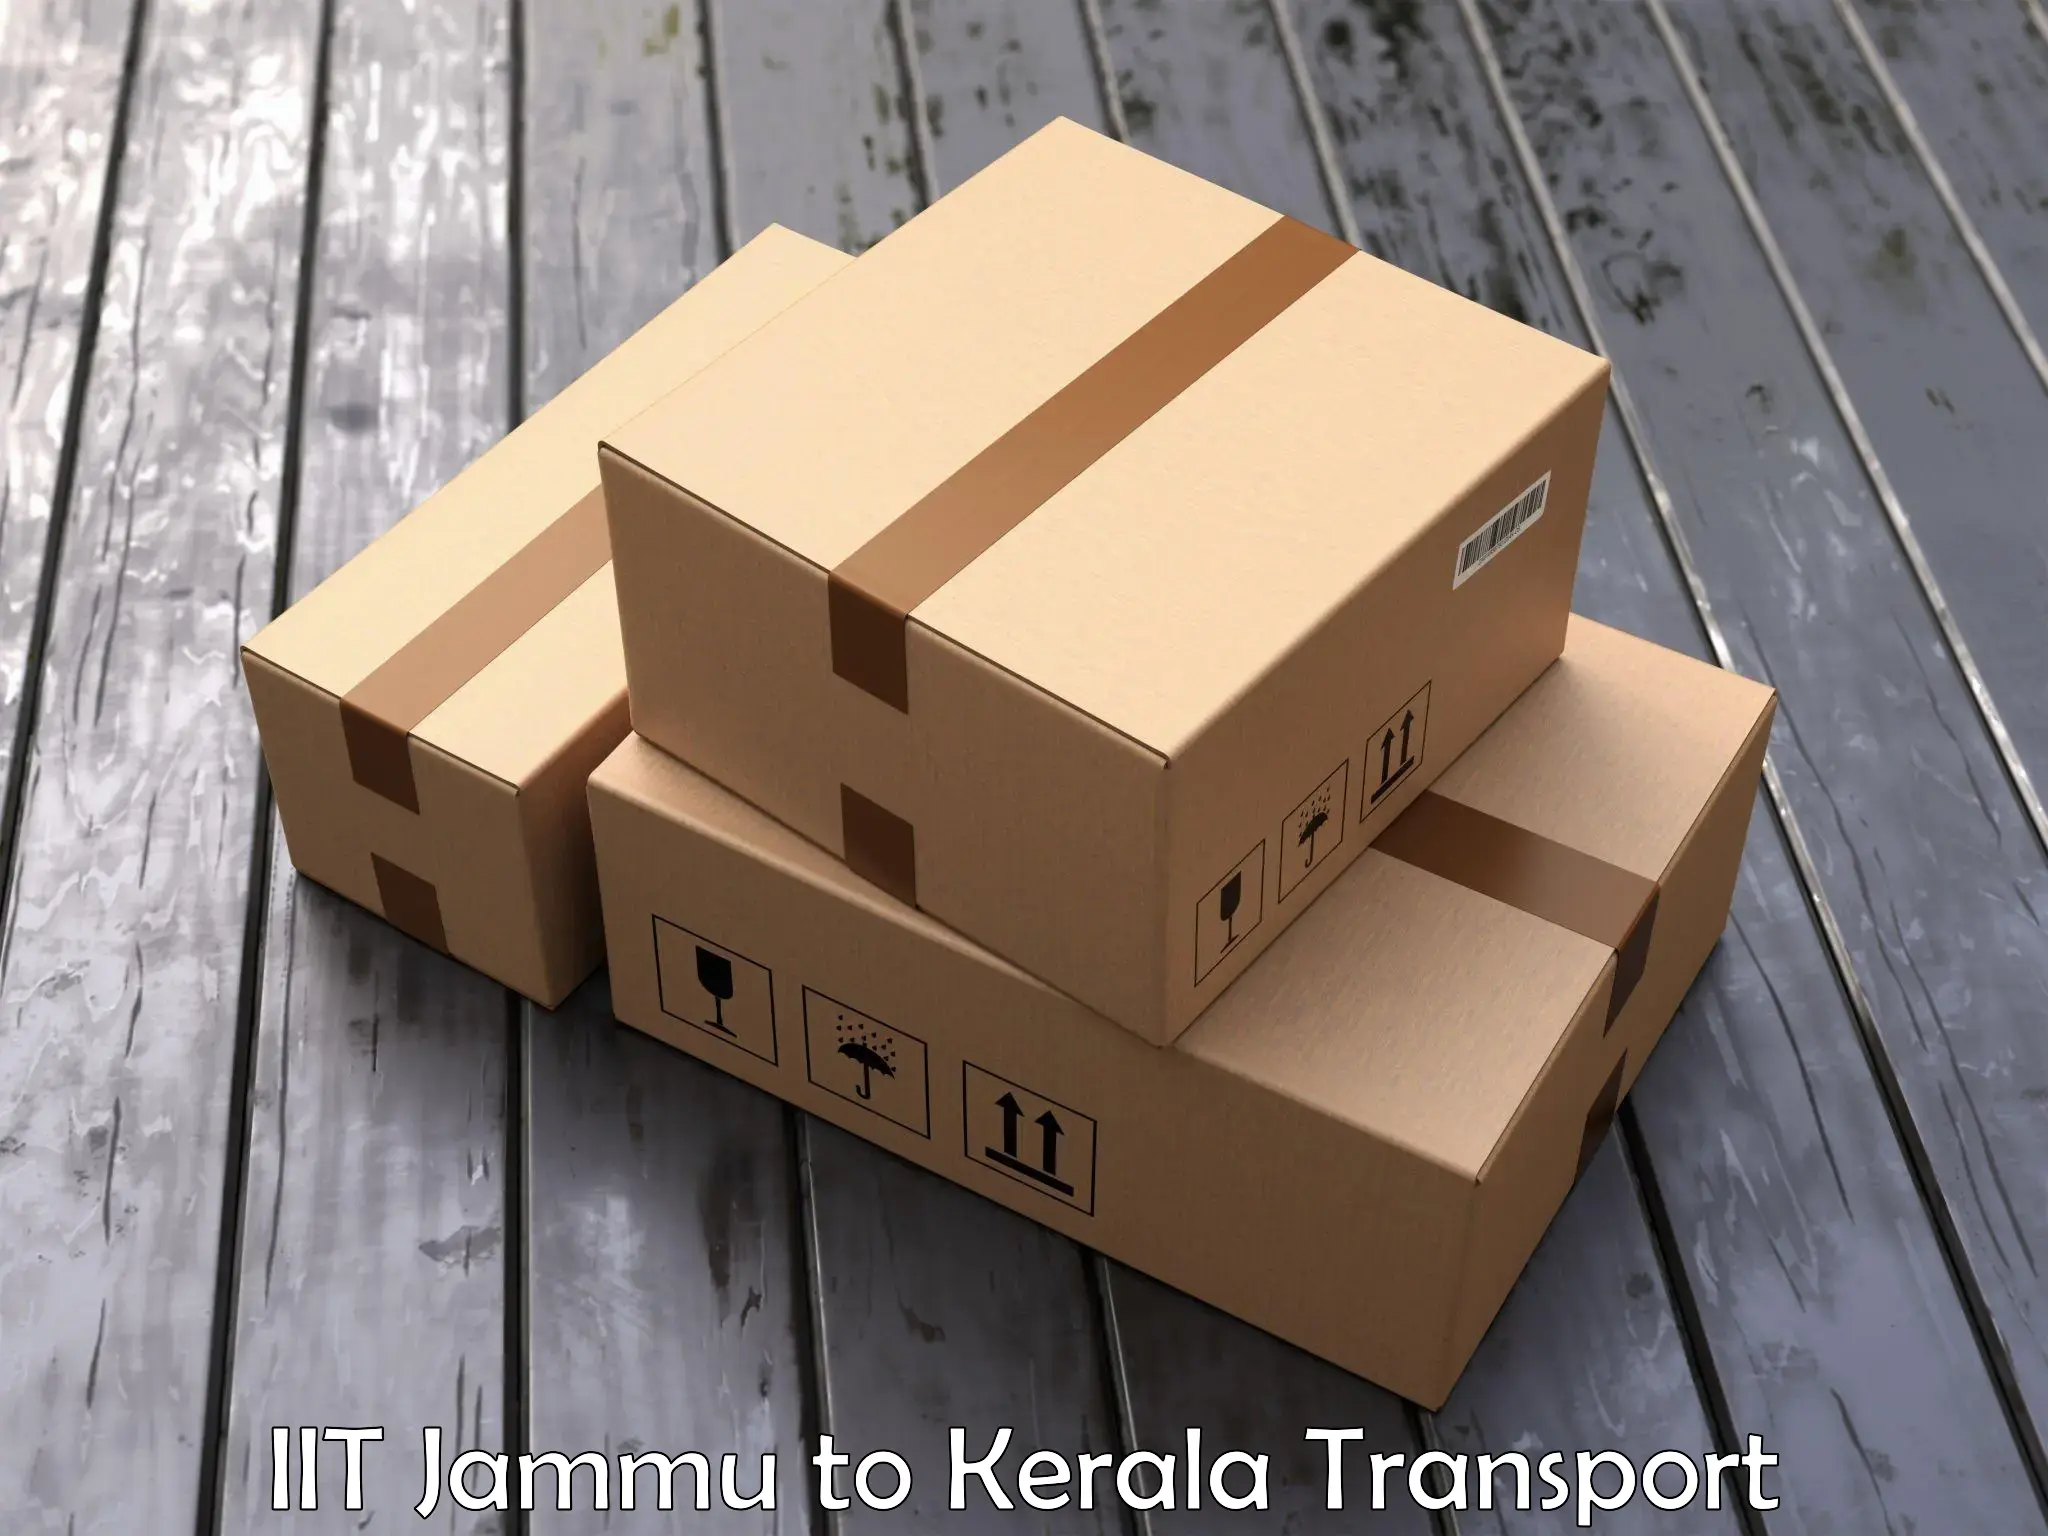 Daily transport service IIT Jammu to Taliparamba